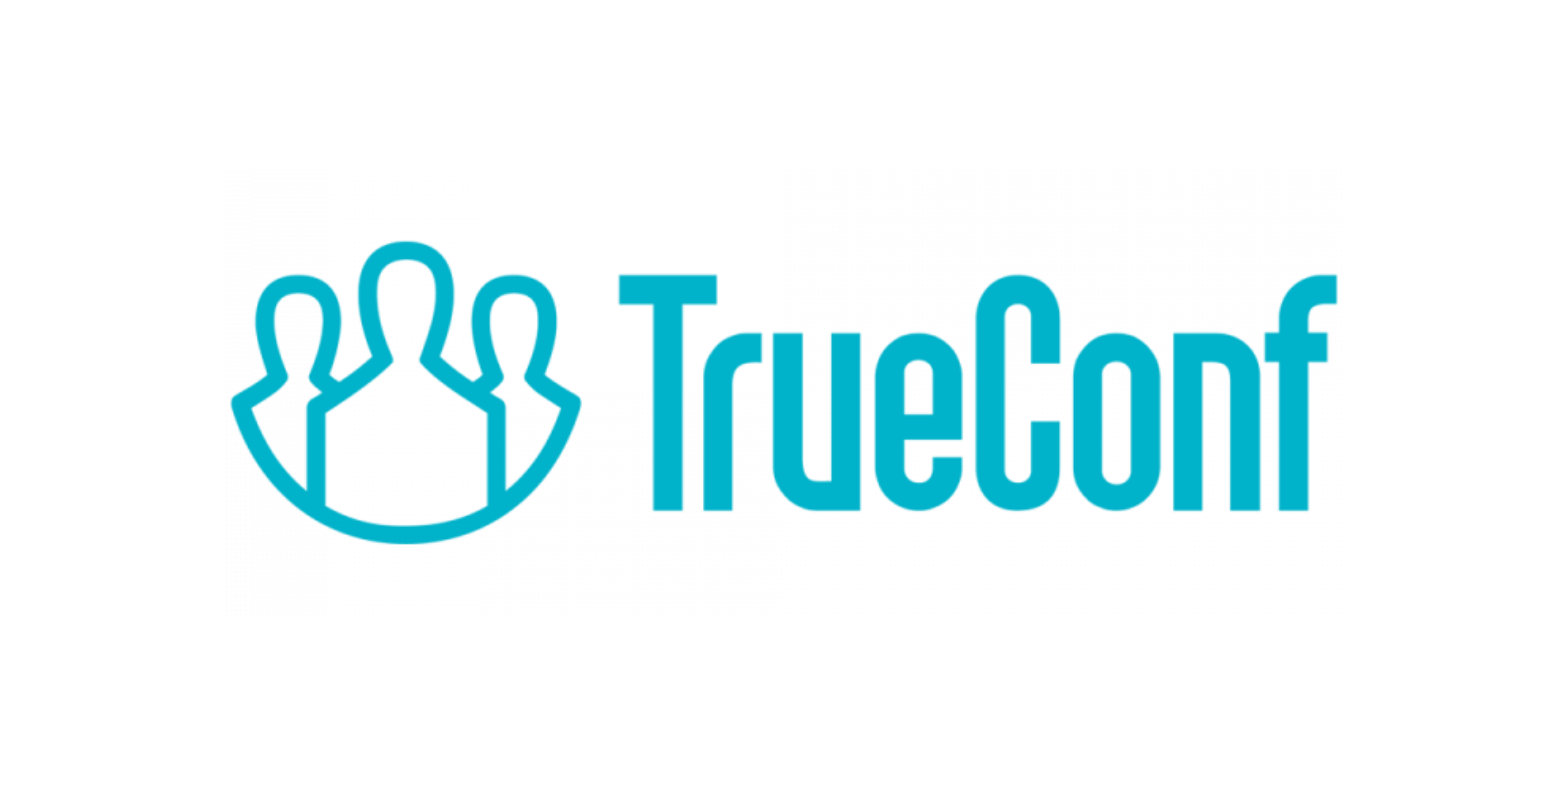 TrueConf Server Техническая поддержка на 1 год полная 1-19   онлайн-пользователей